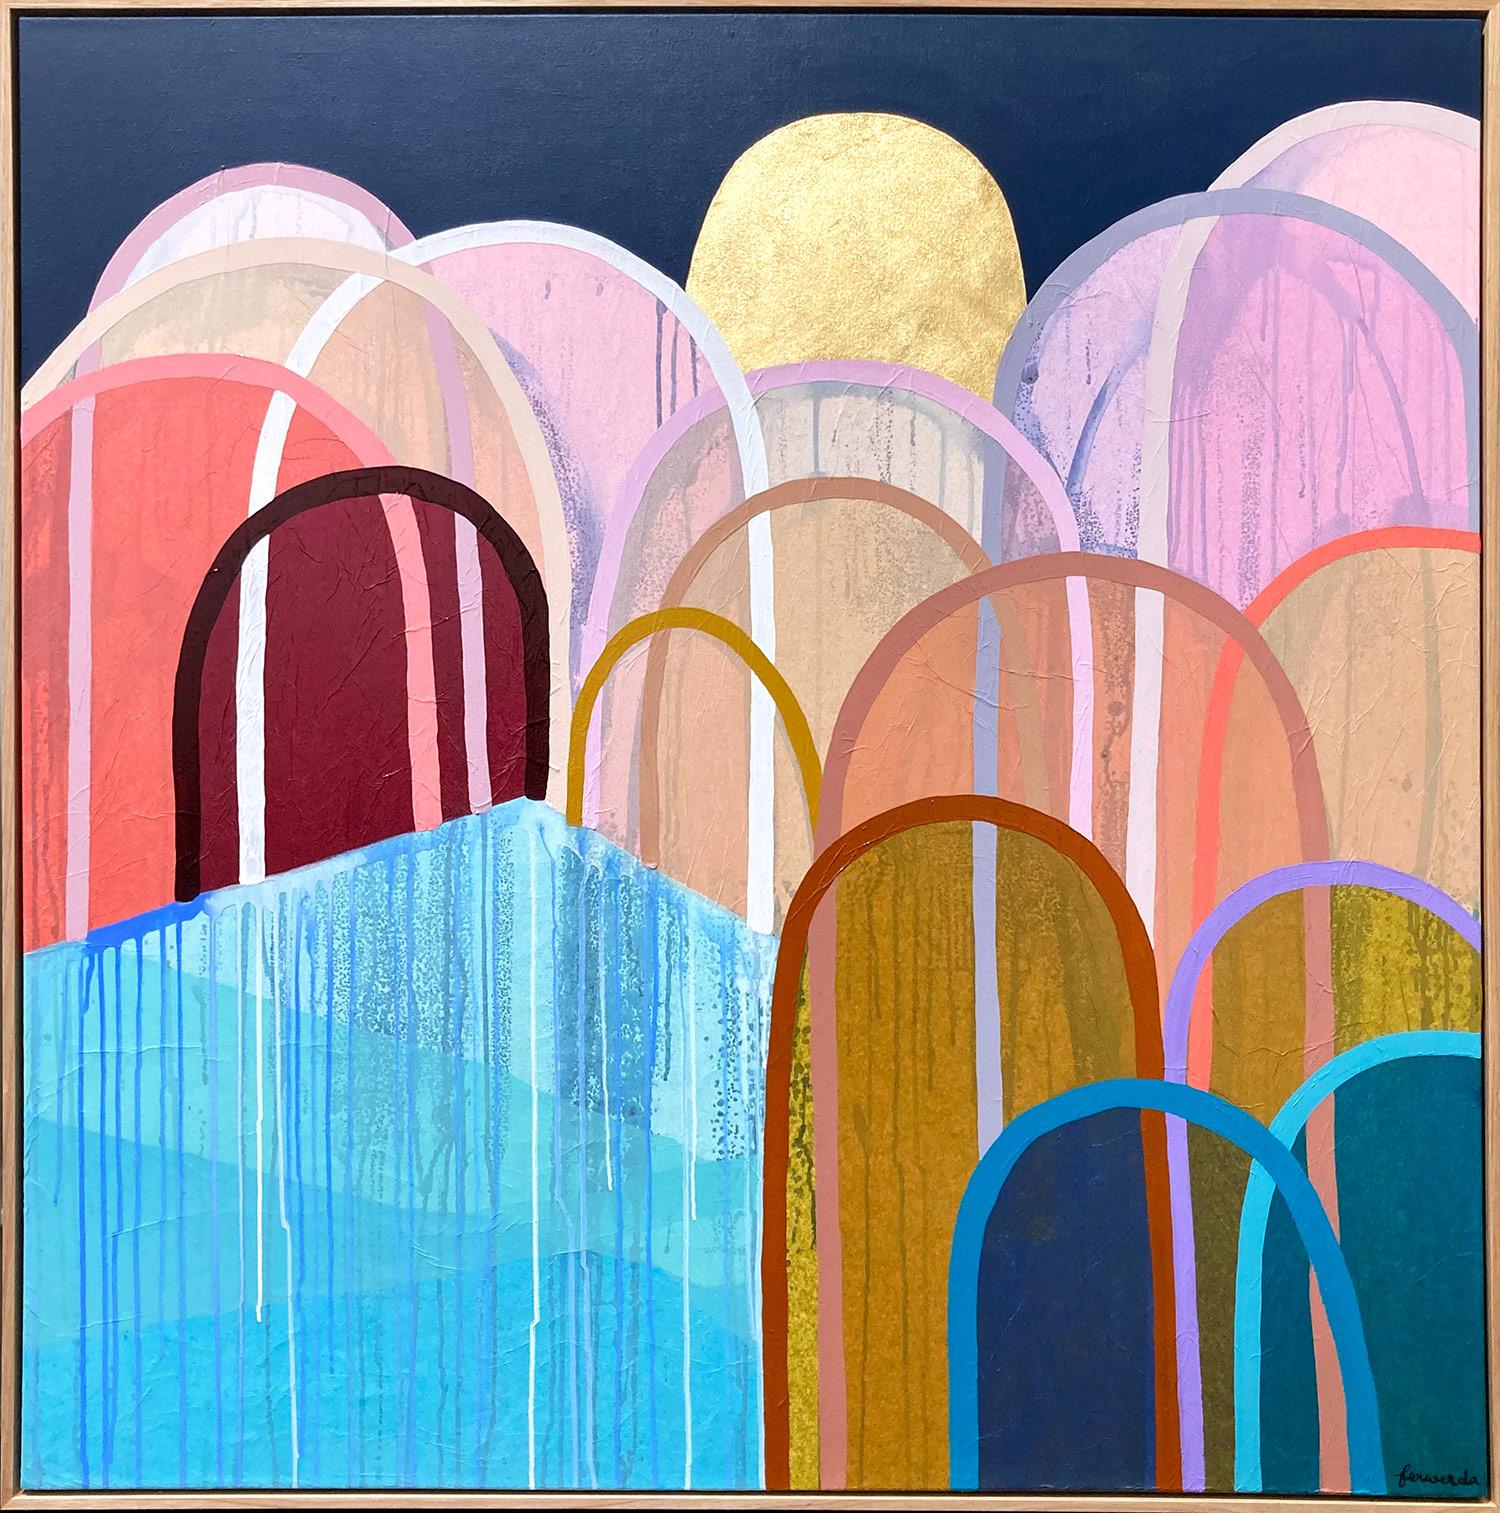 « URL Curl Beach Hills » - Peinture contemporaine colorée en techniques mixtes sur toile